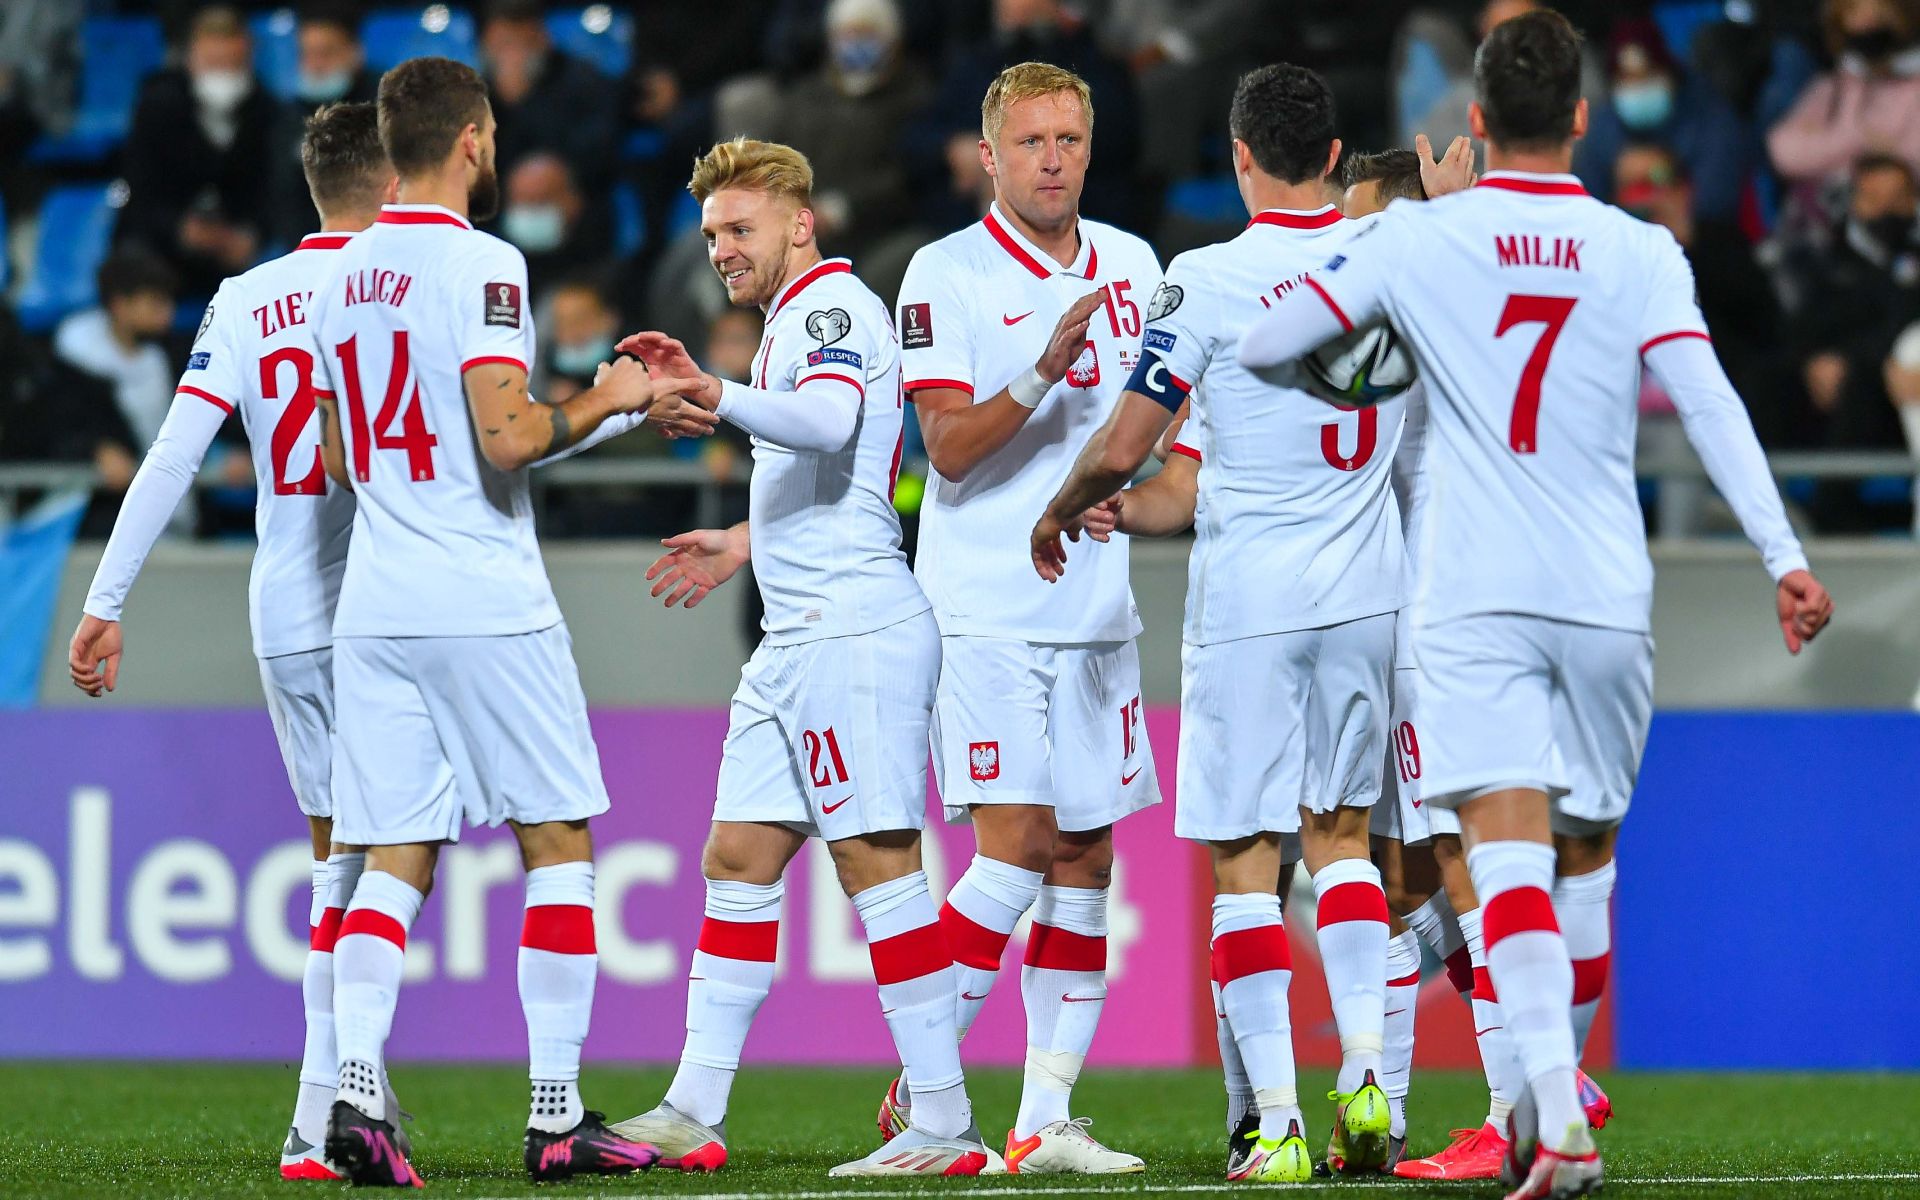 У Левандовски отличный шанс на выход из группы: чем Польша может удивить на чемпионате мира в Катаре